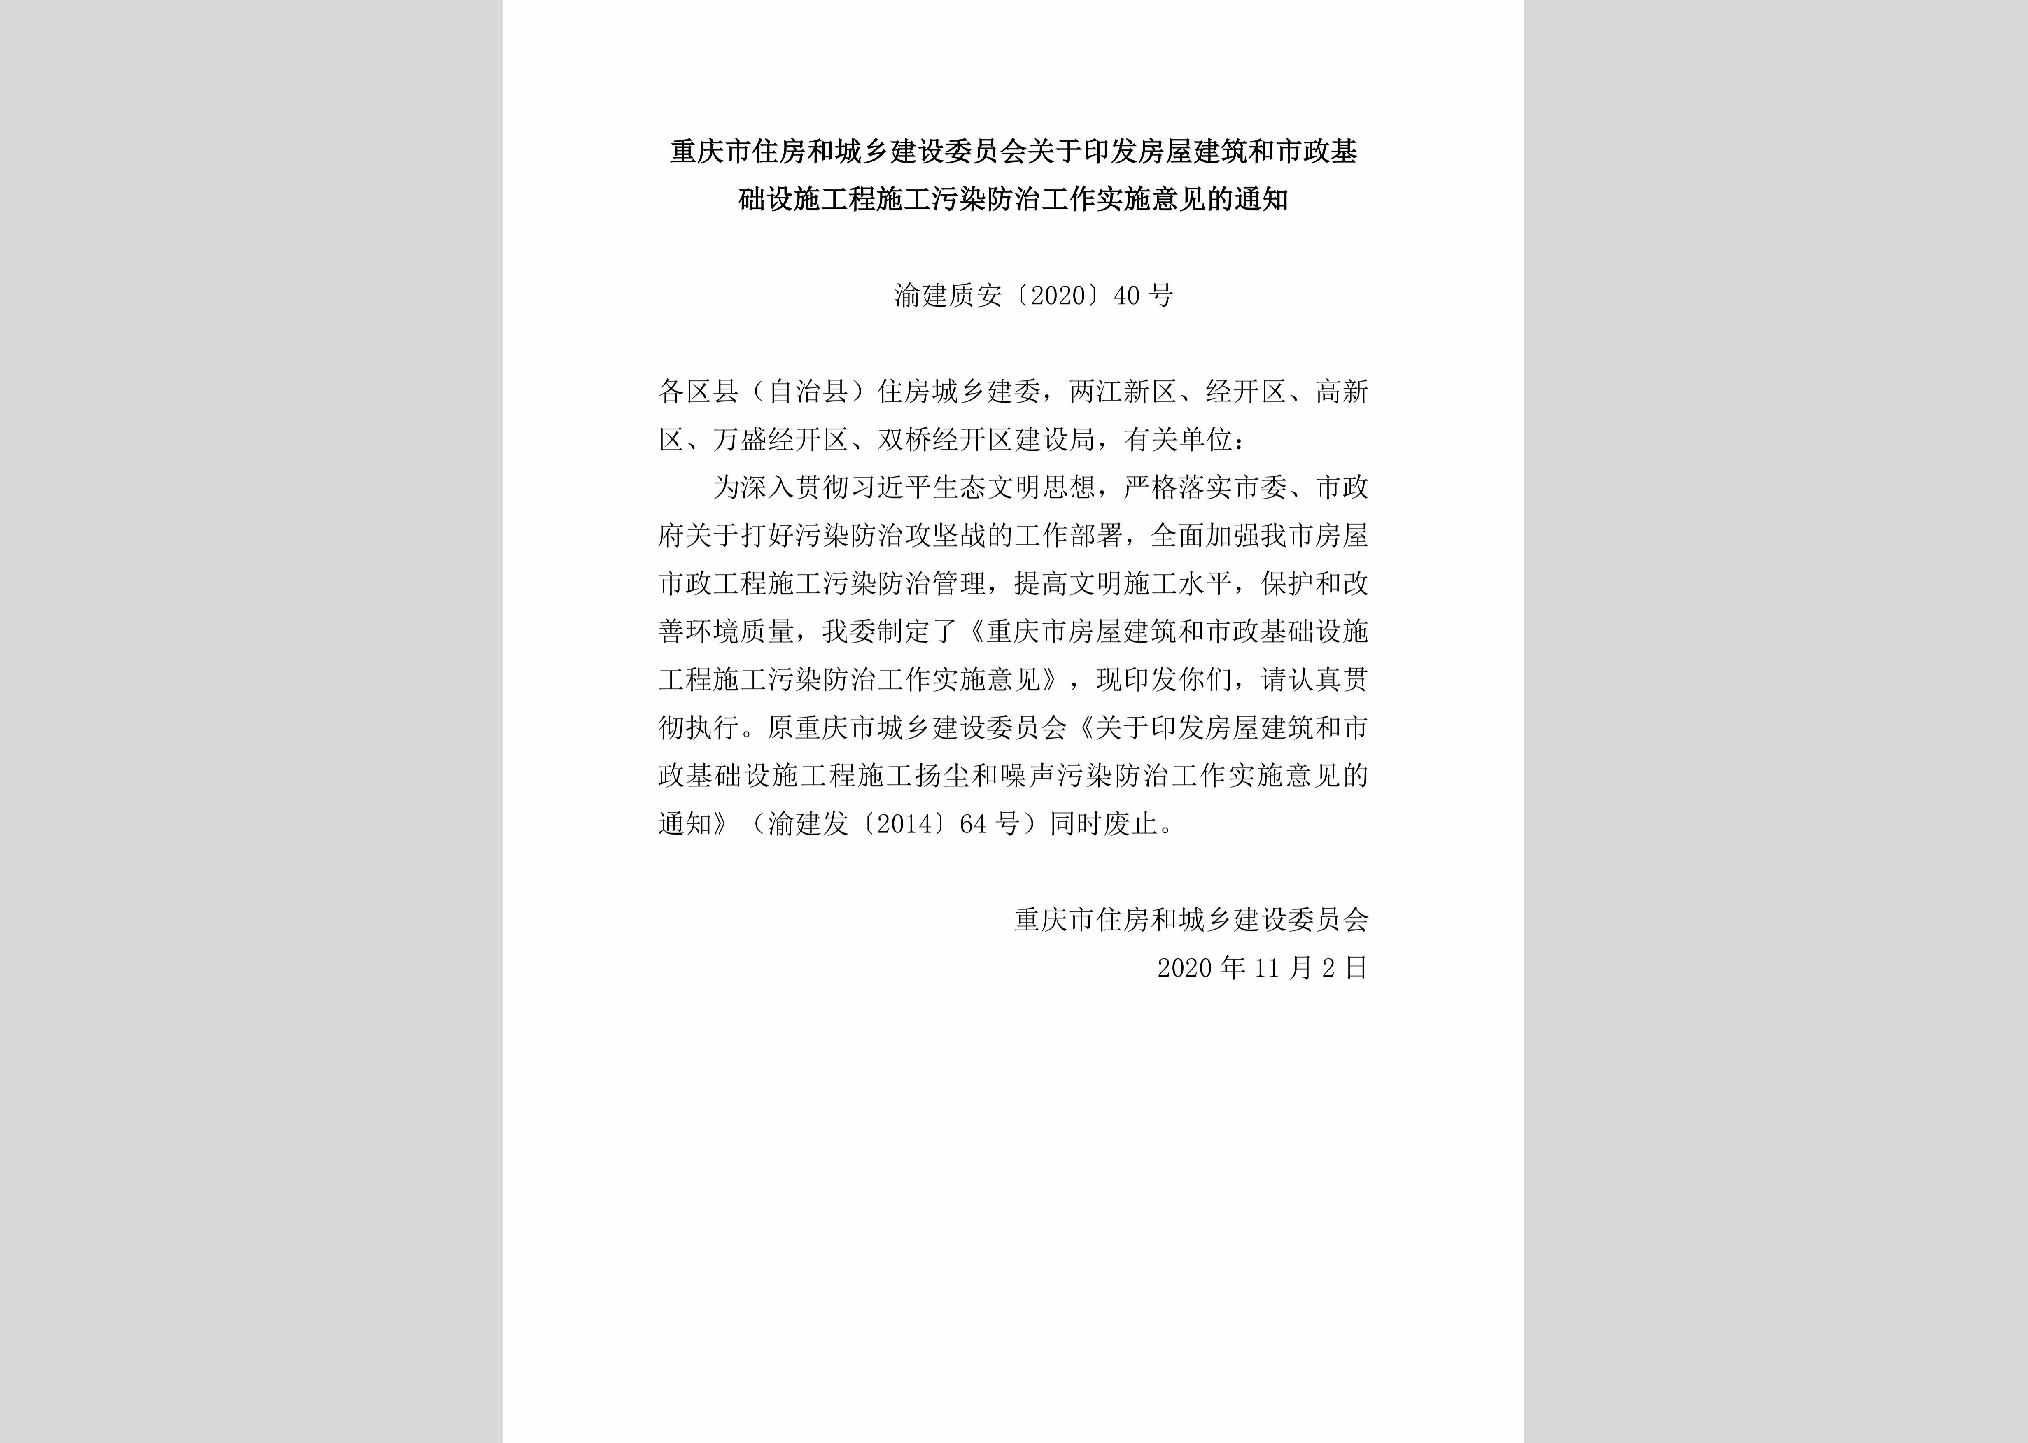 渝建质安[2020]40号：重庆市住房和城乡建设委员会关于印发房屋建筑和市政基础设施工程施工污染防治工作实施意见的通知